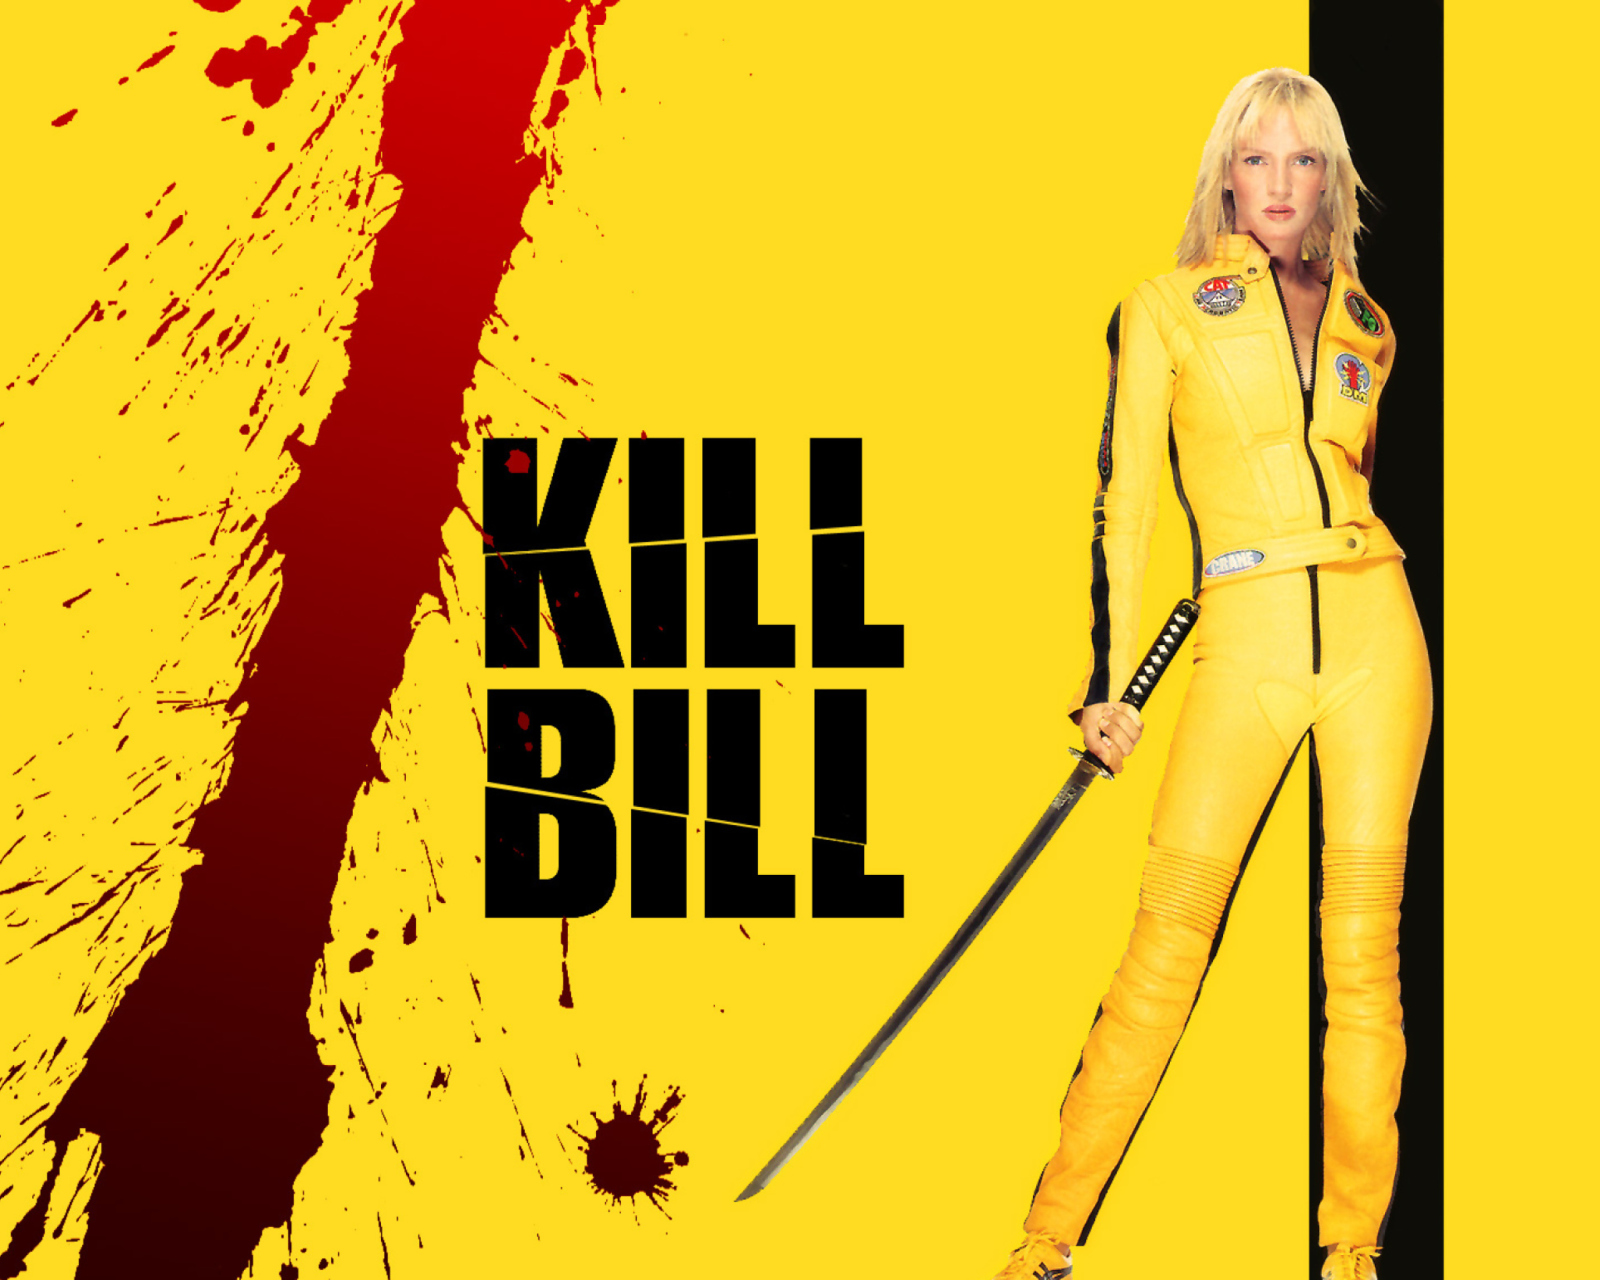 Kill Bill wallpaper 1600x1280